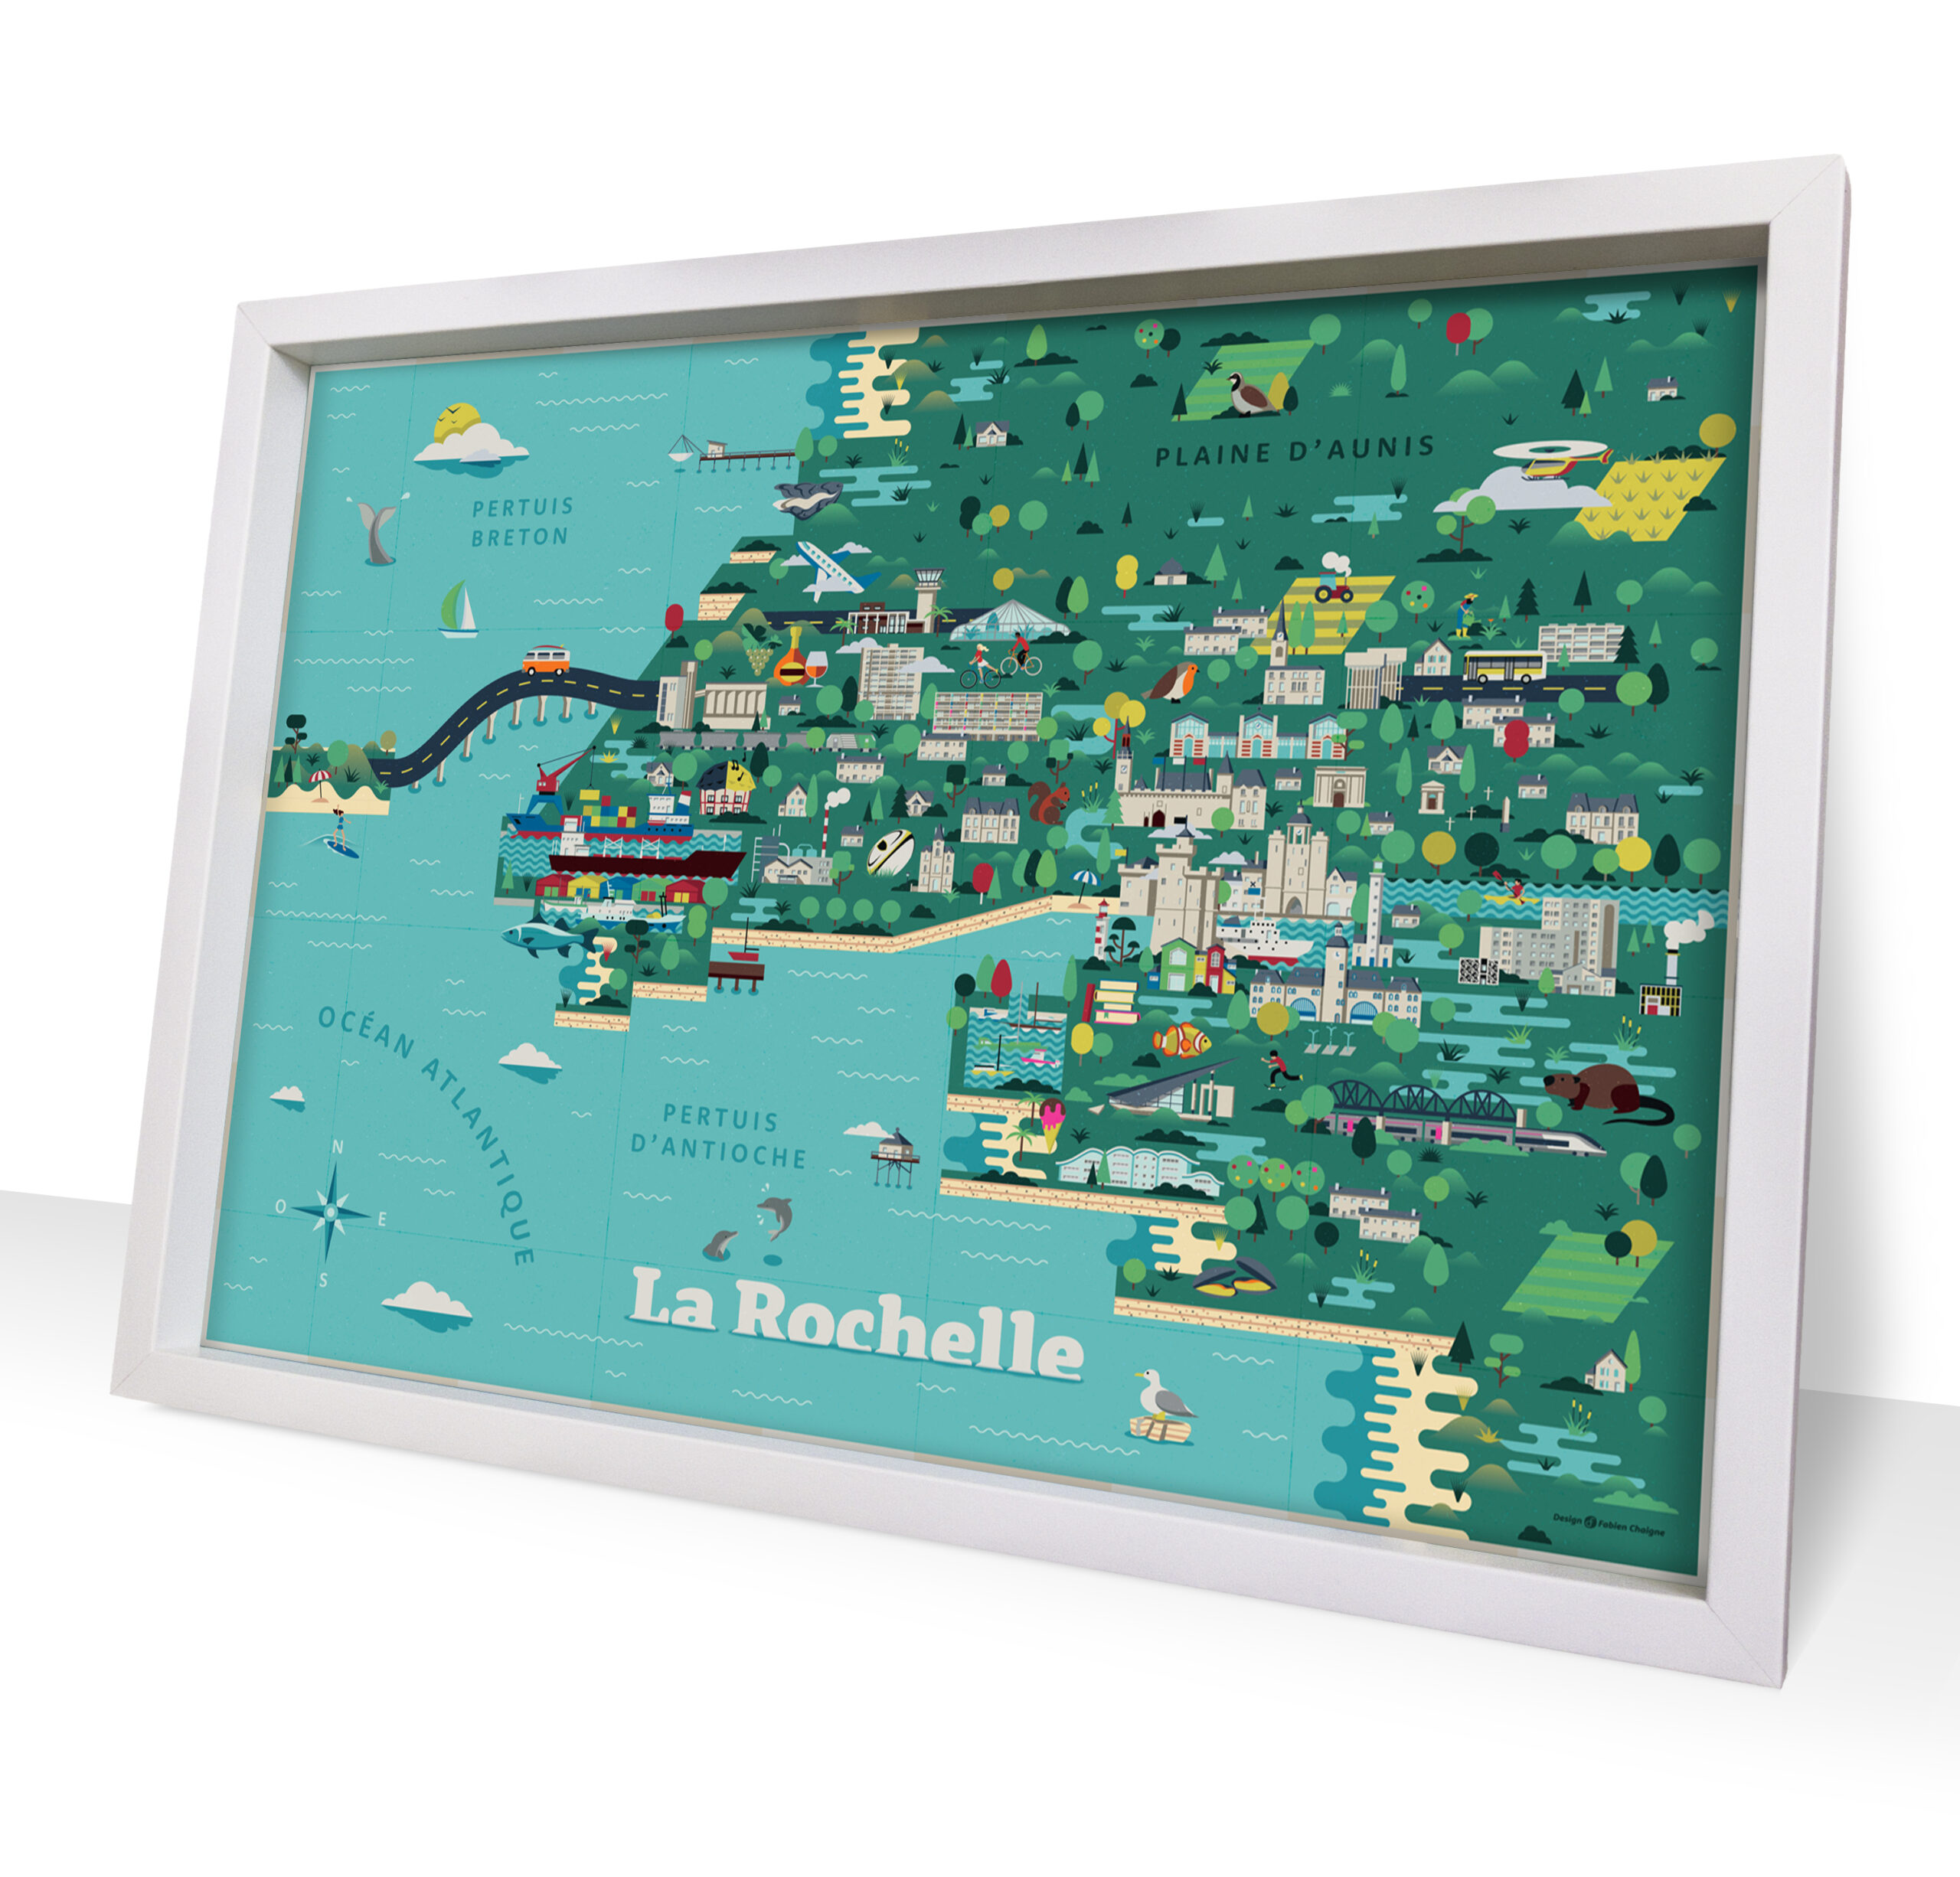 Carte illustrée de La Rochelle dans son cadre. C'est une carte avec des couleurs vives. Les bâtiments, la faune et la flore sont représentés de façon synthétique et graphique. L'environnement maritime est très présent avec les ports, les falaises, les animaux marins et les plages.